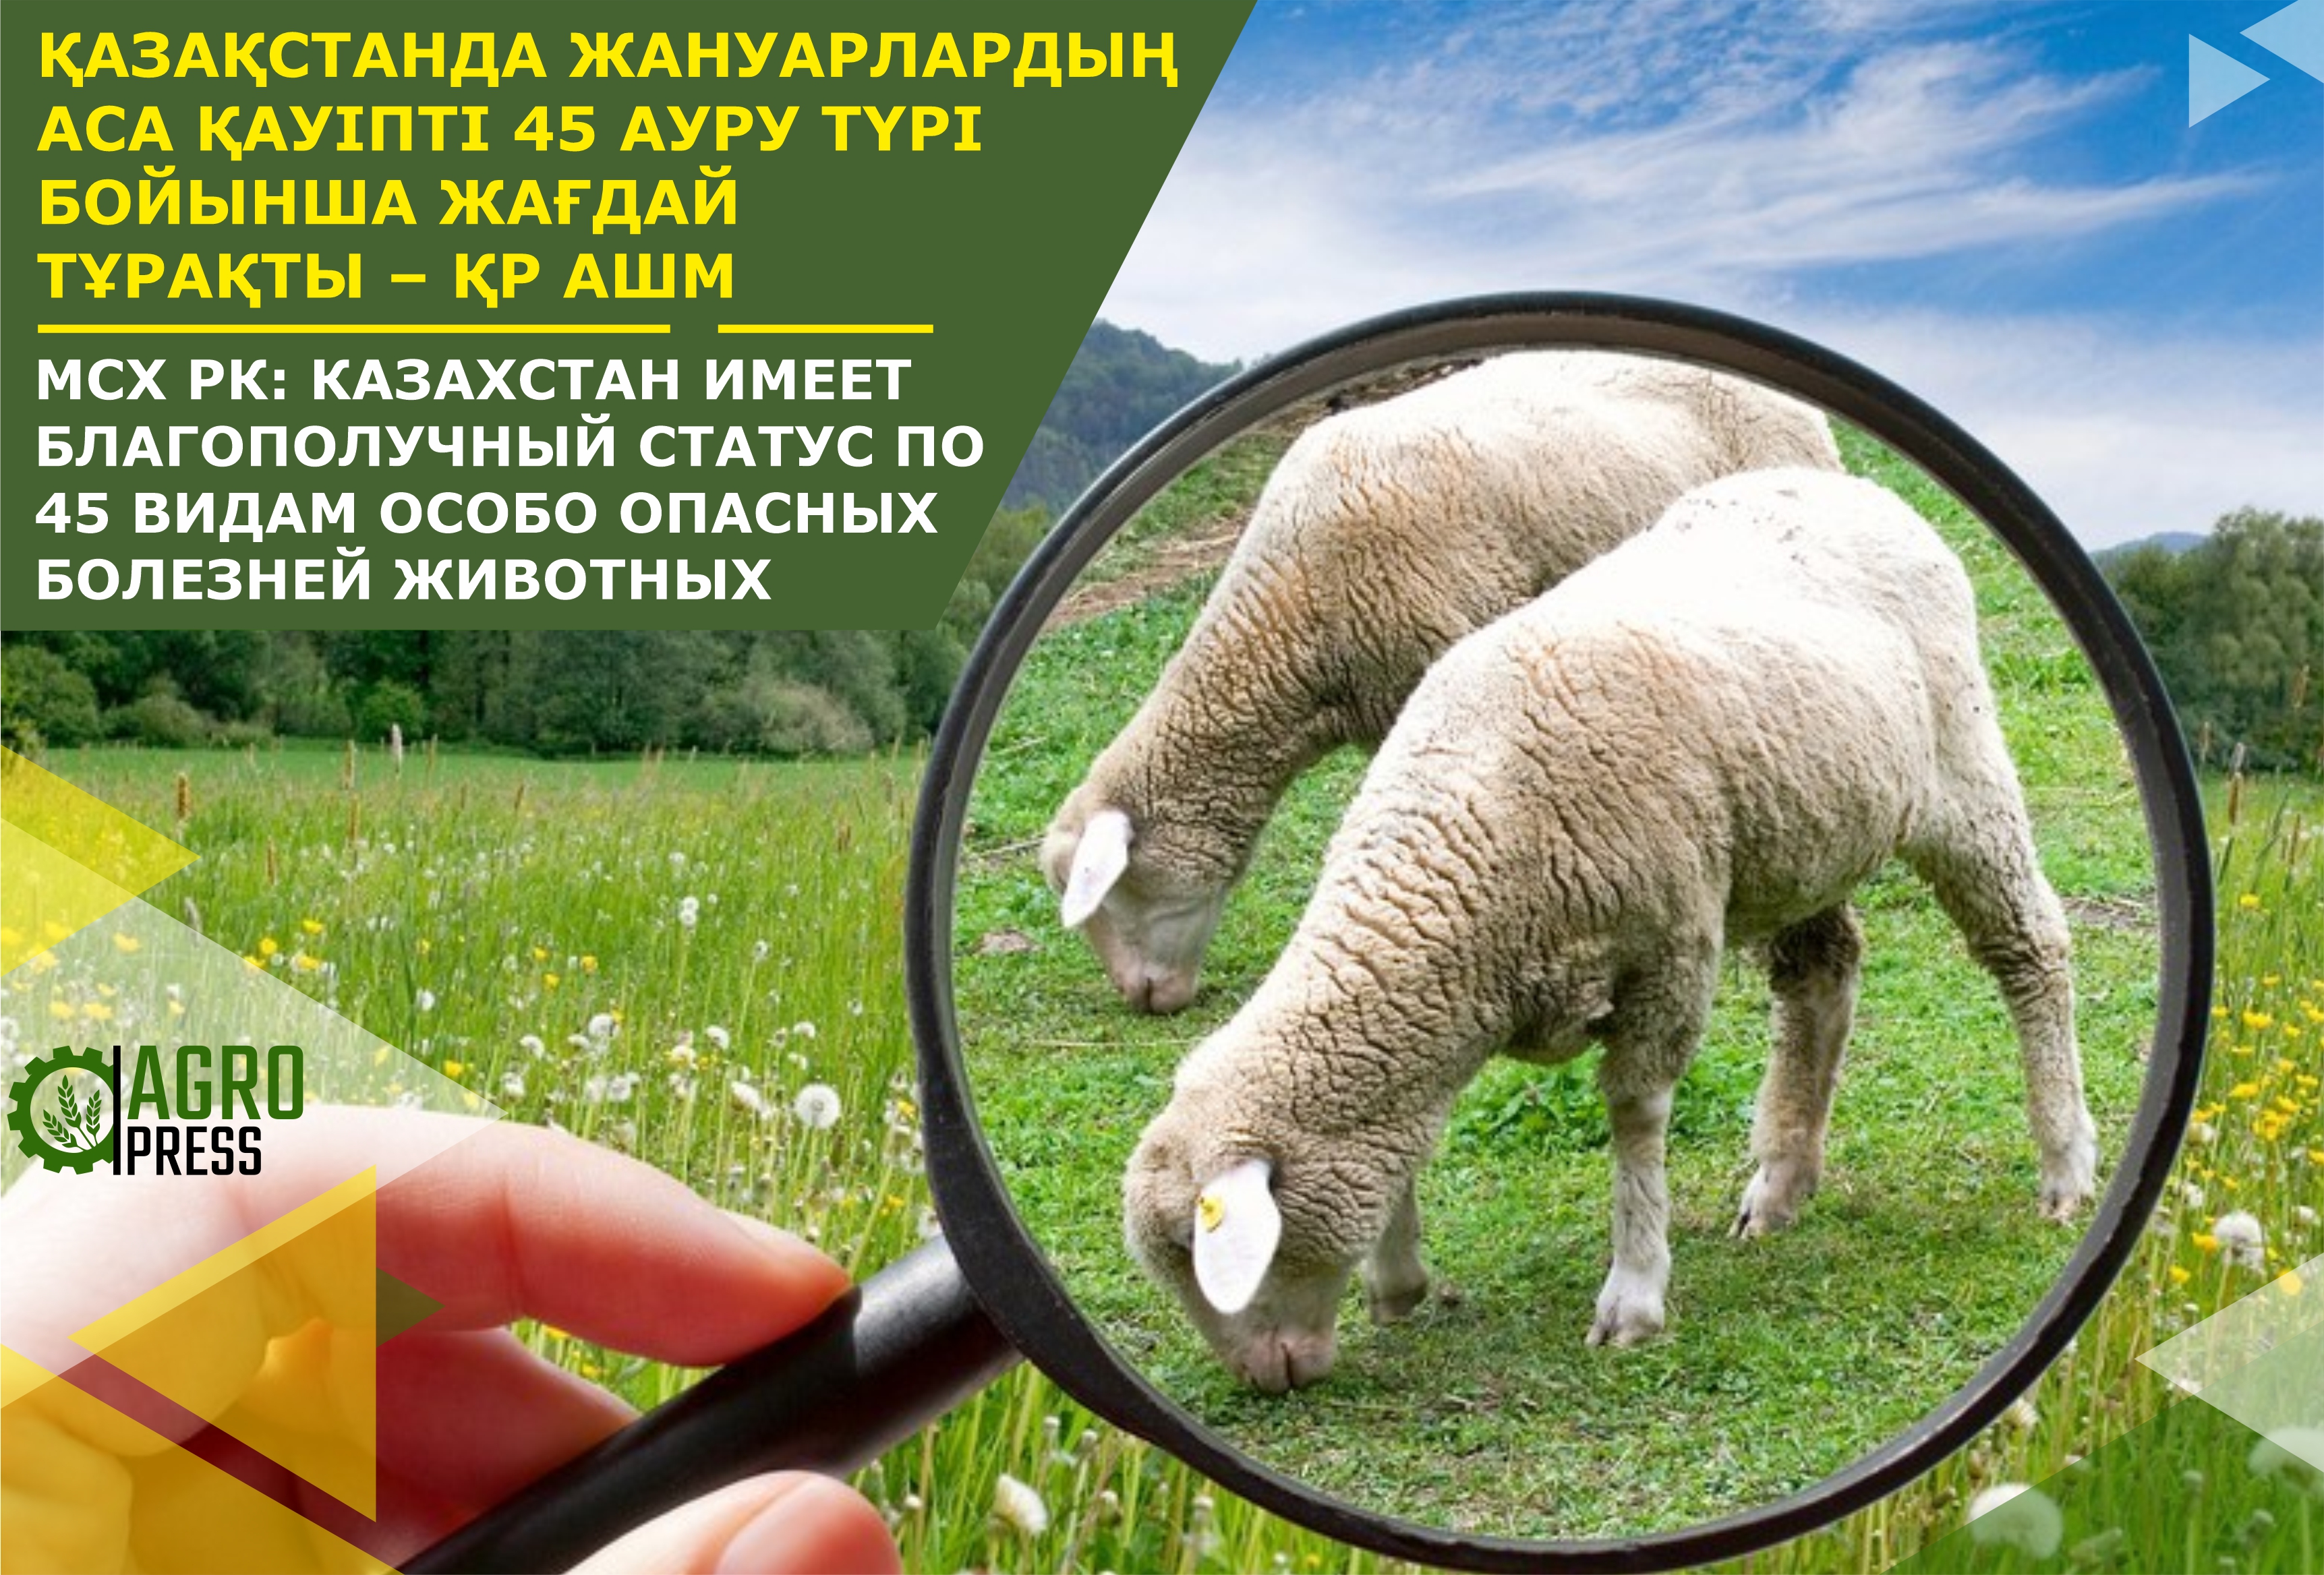 МСХ РК: Казахстан имеет благополучный статус по 45 видам особо опасных болезней животных